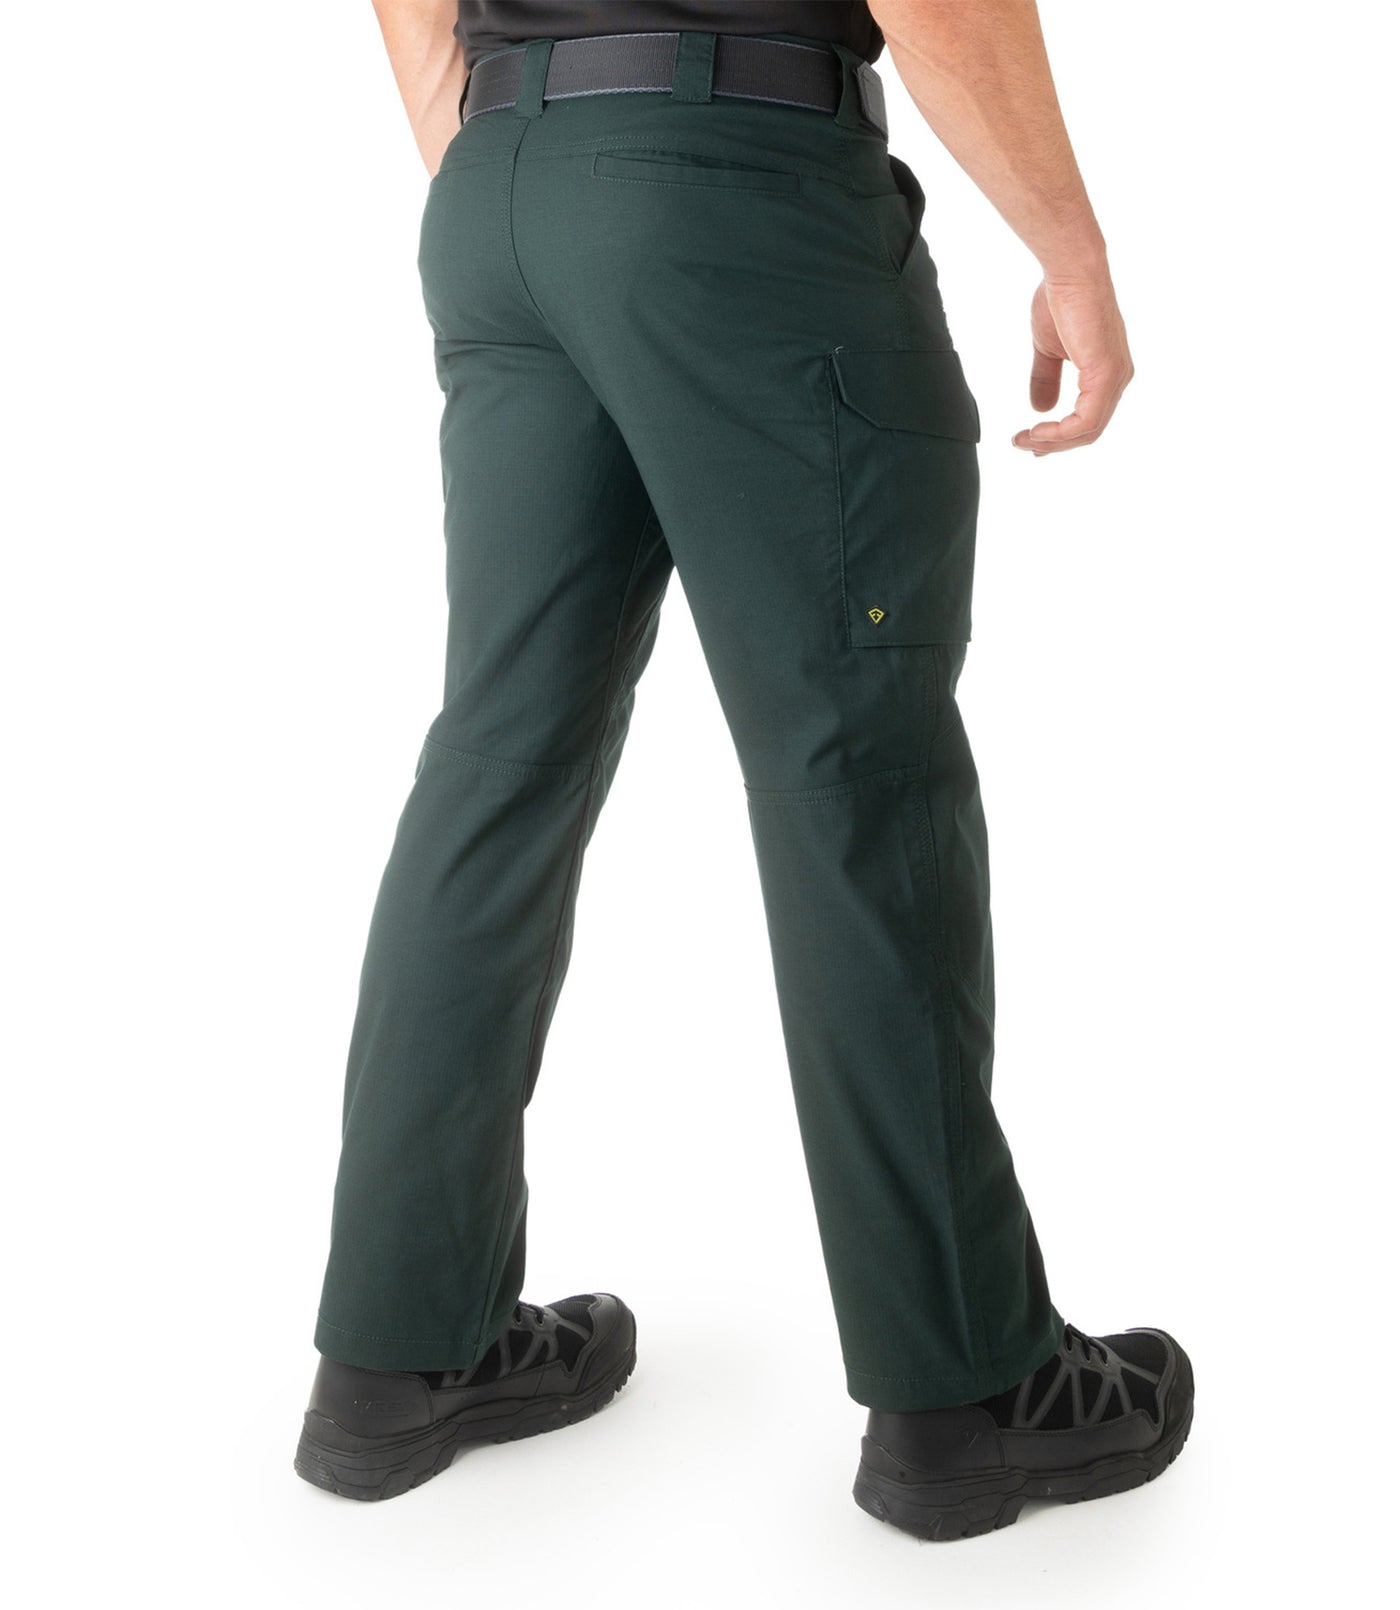 Men's V2 Tactical Pants - Spruce Green